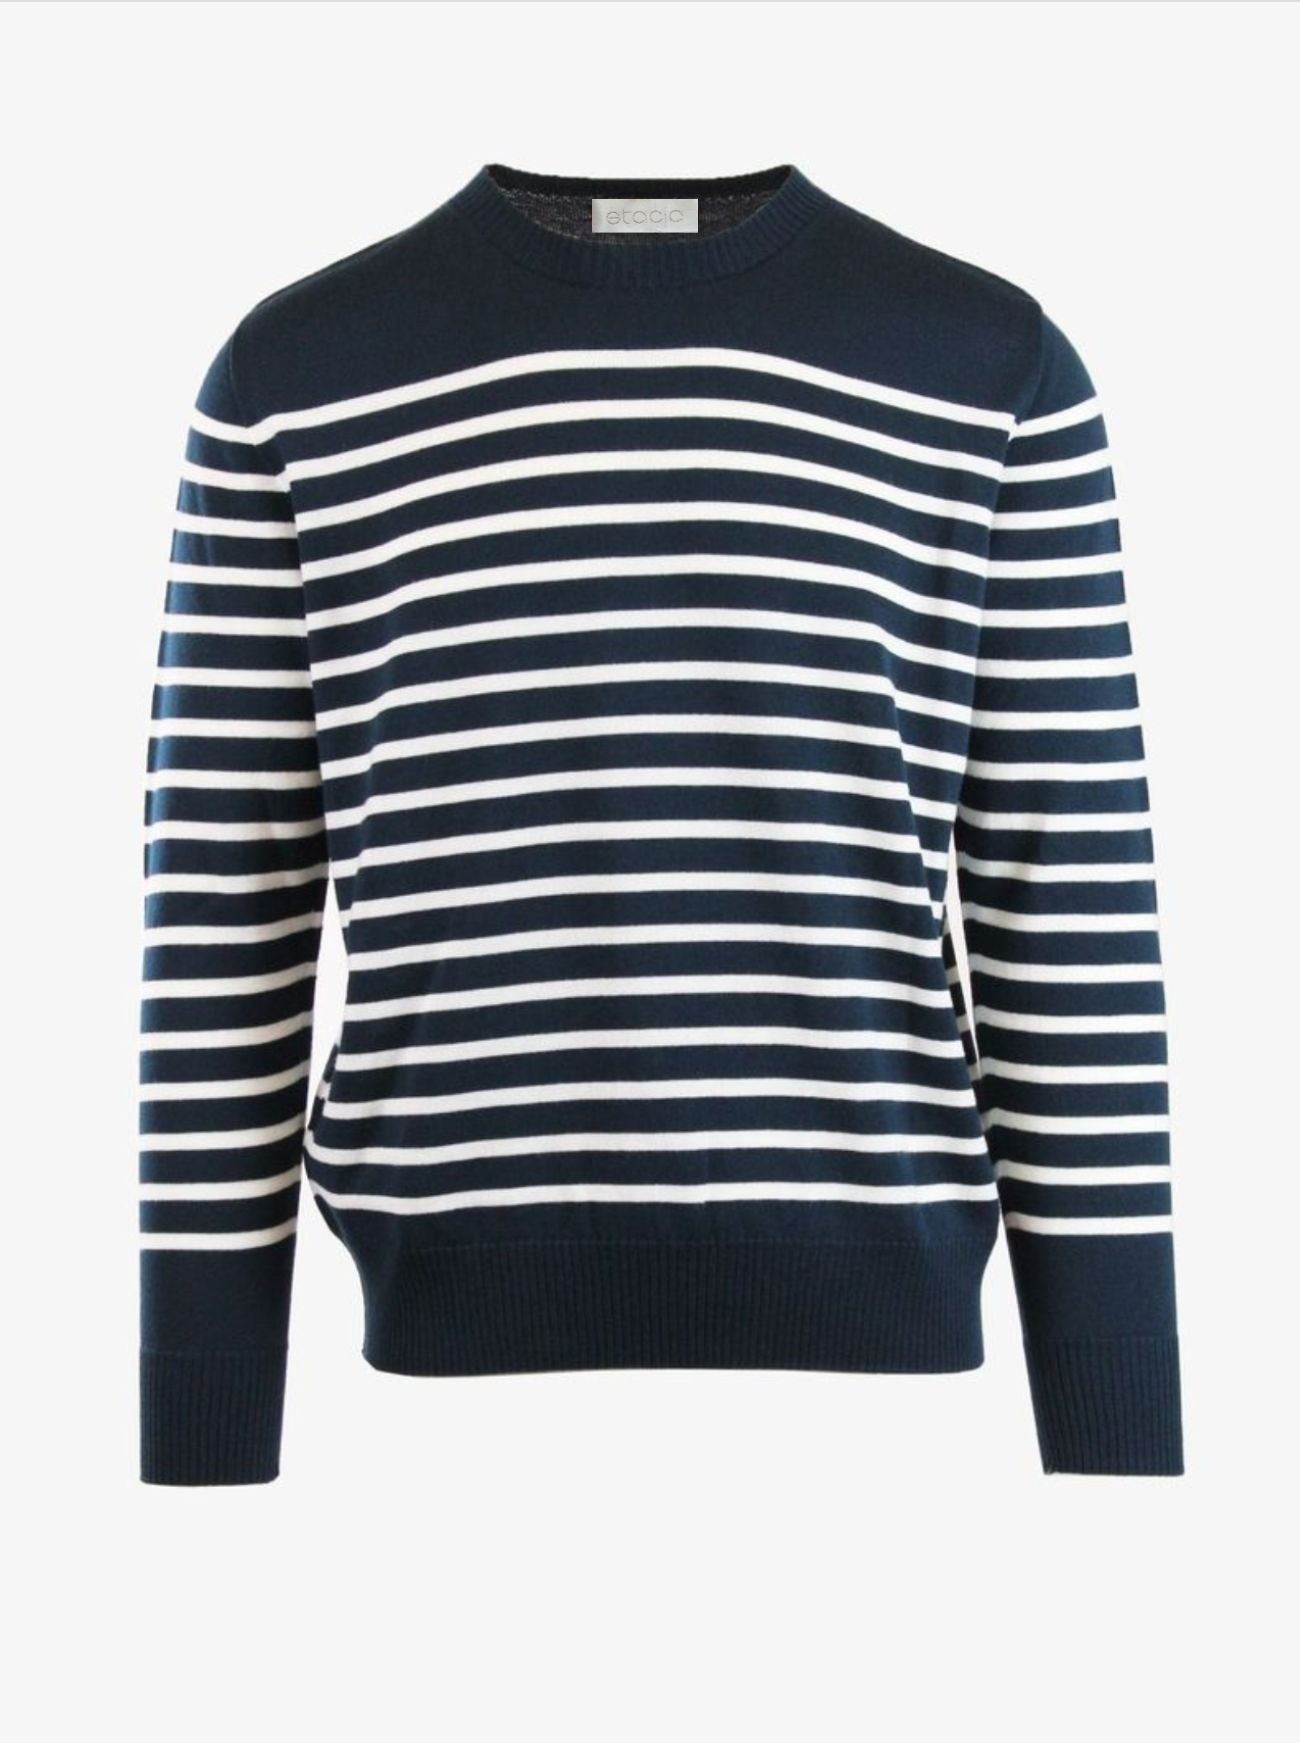 montauk navy/ivory stripe mens merino wool sweater